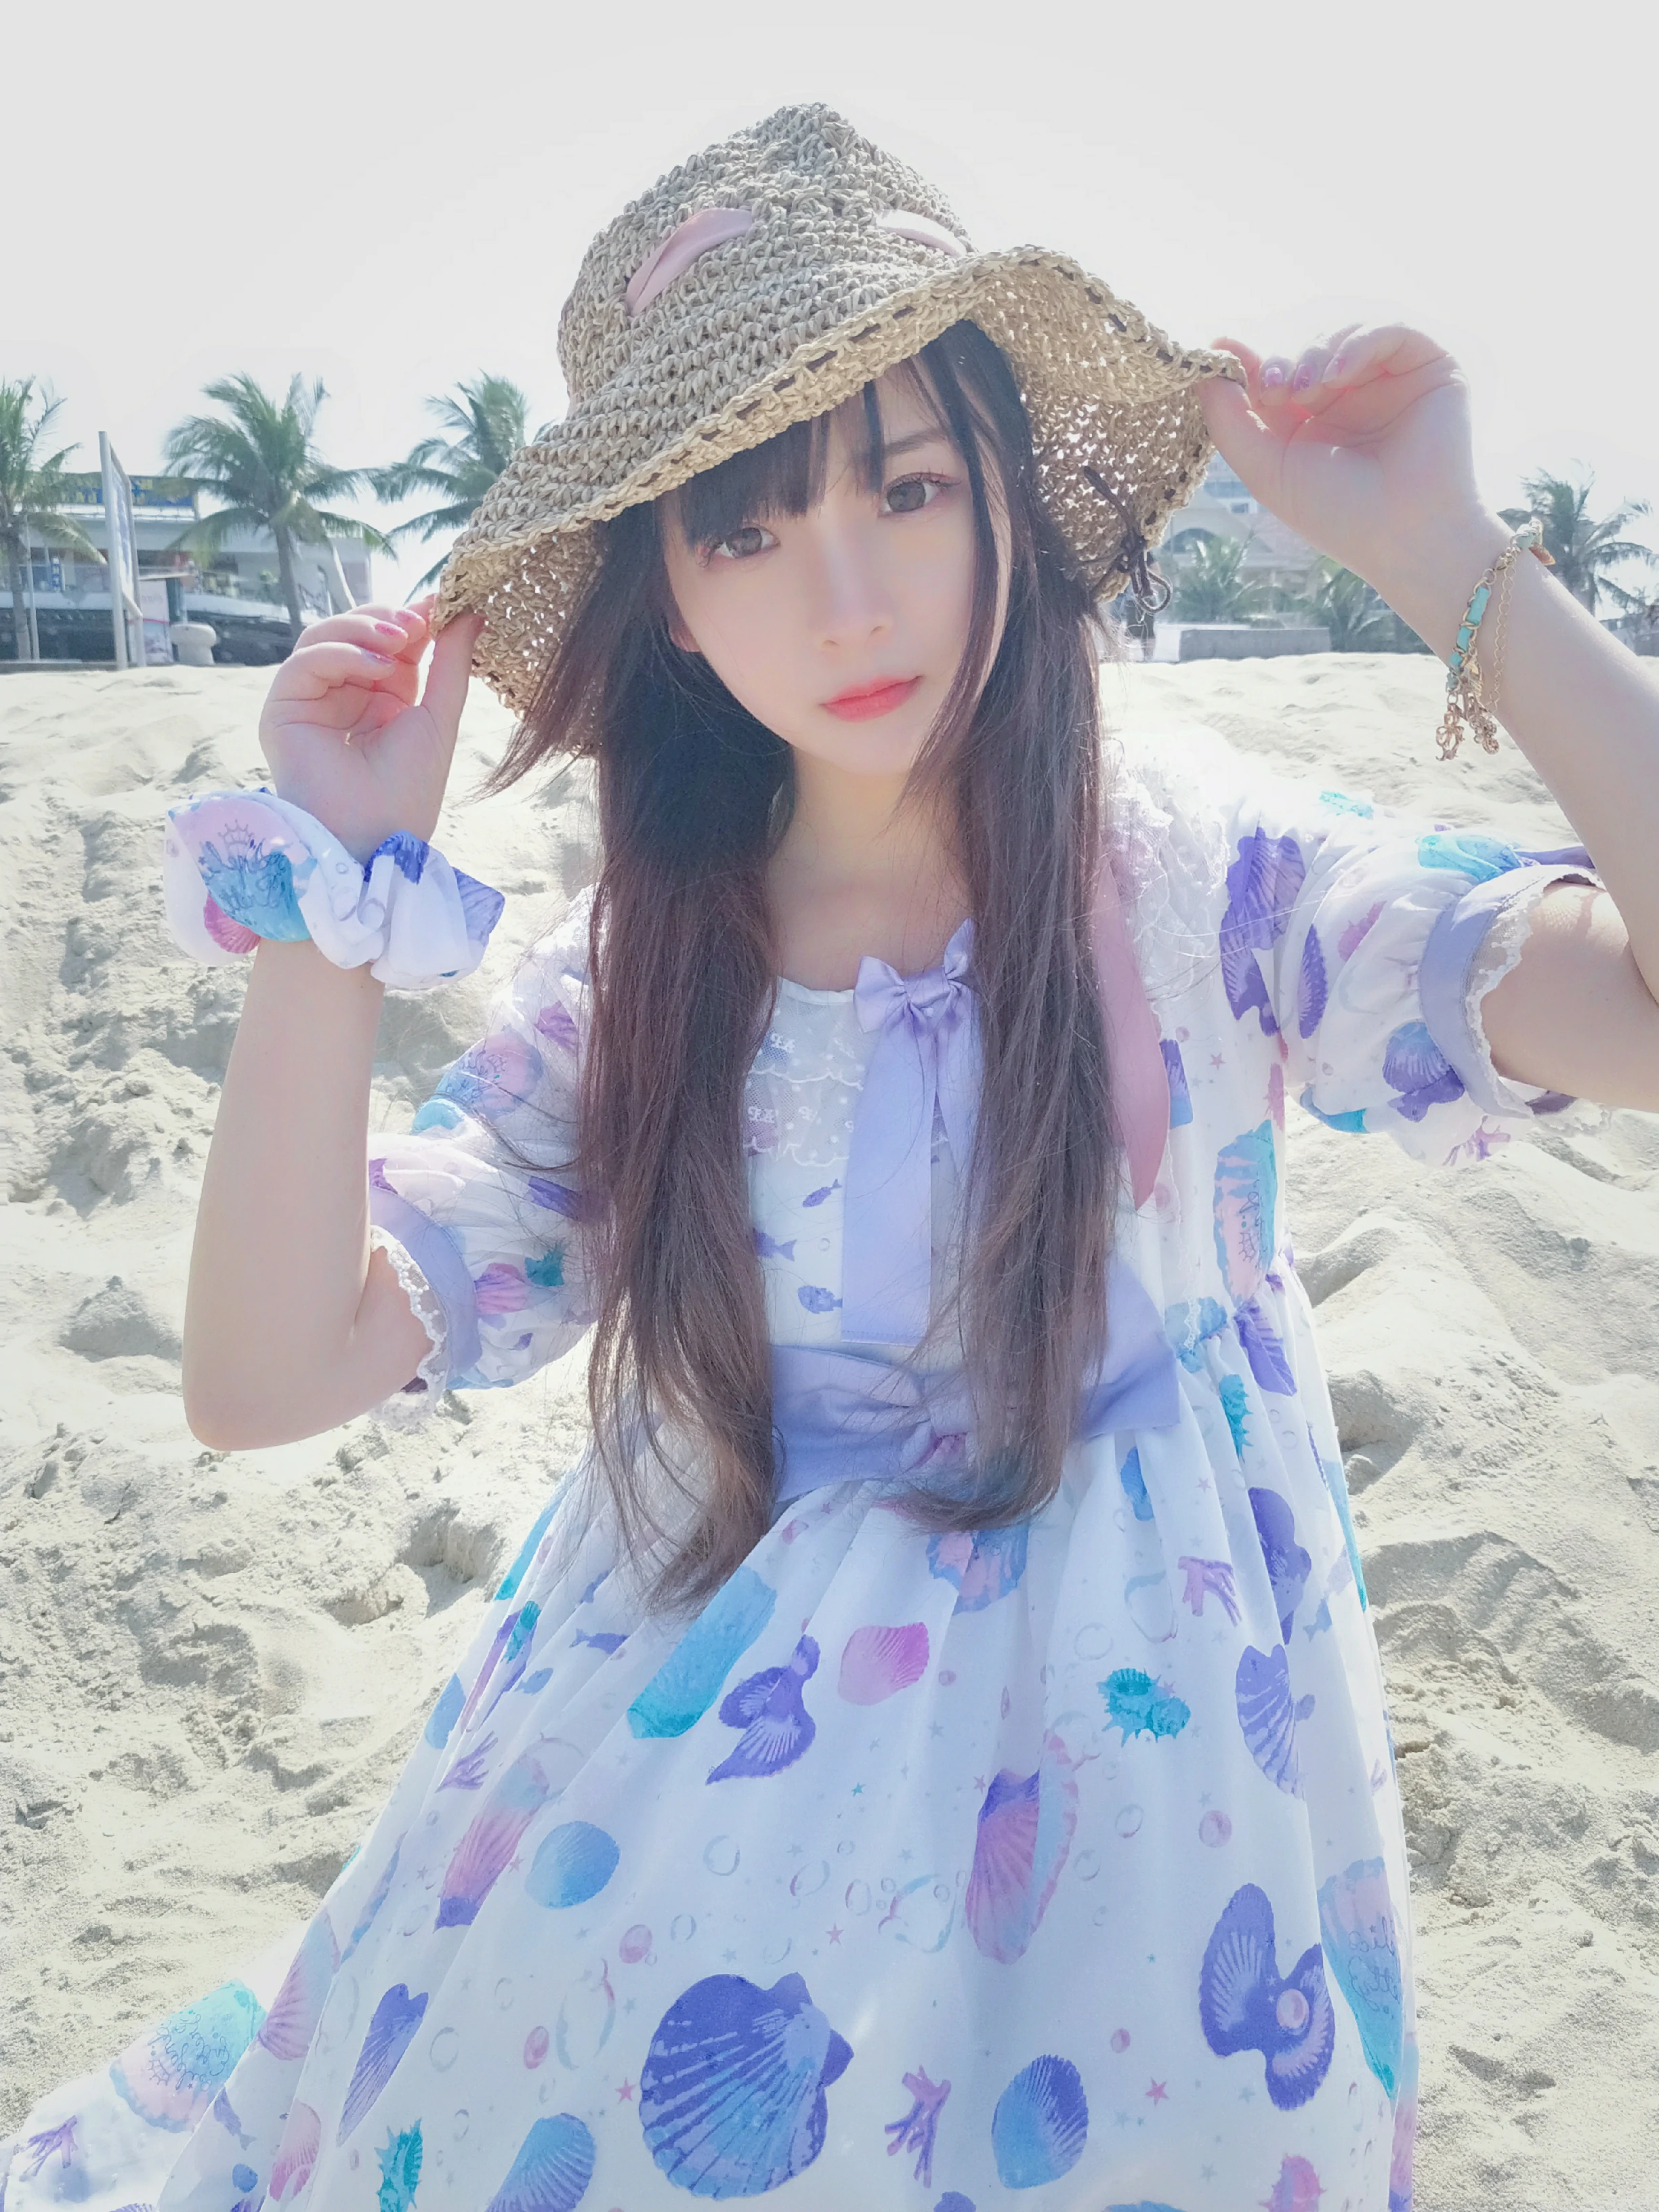 清纯少女 古川kagura 蓝色连身裙之沙滩写真,_20190208_072844